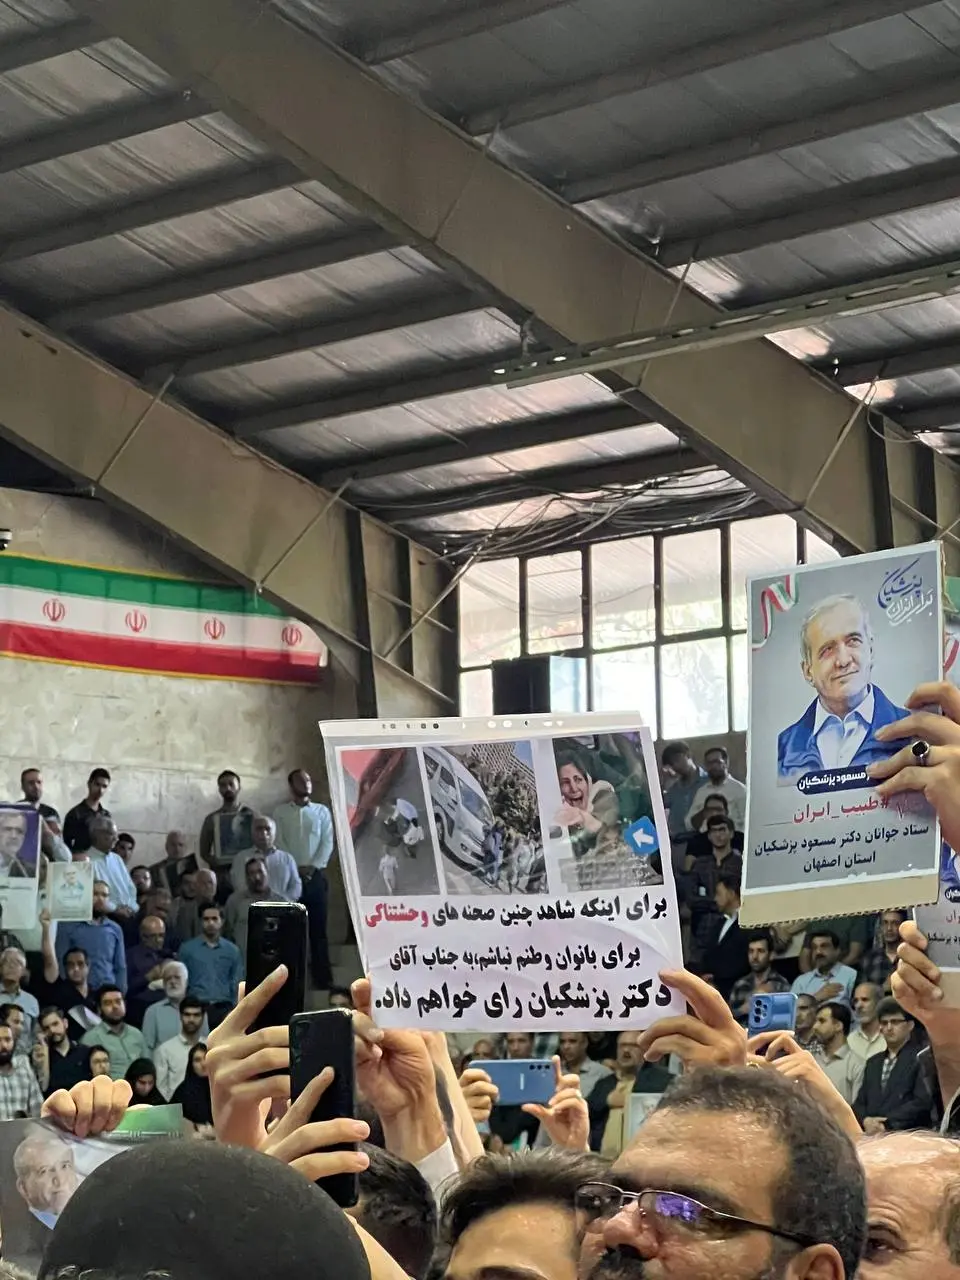 حضور پزشکیان در دیار زاینده‌رود/ استقبال دانشگاهیان اصفهان از ظریف پس از سخنان طوفانی‌اش/ رای ندادن رای دادن به اقلیت است